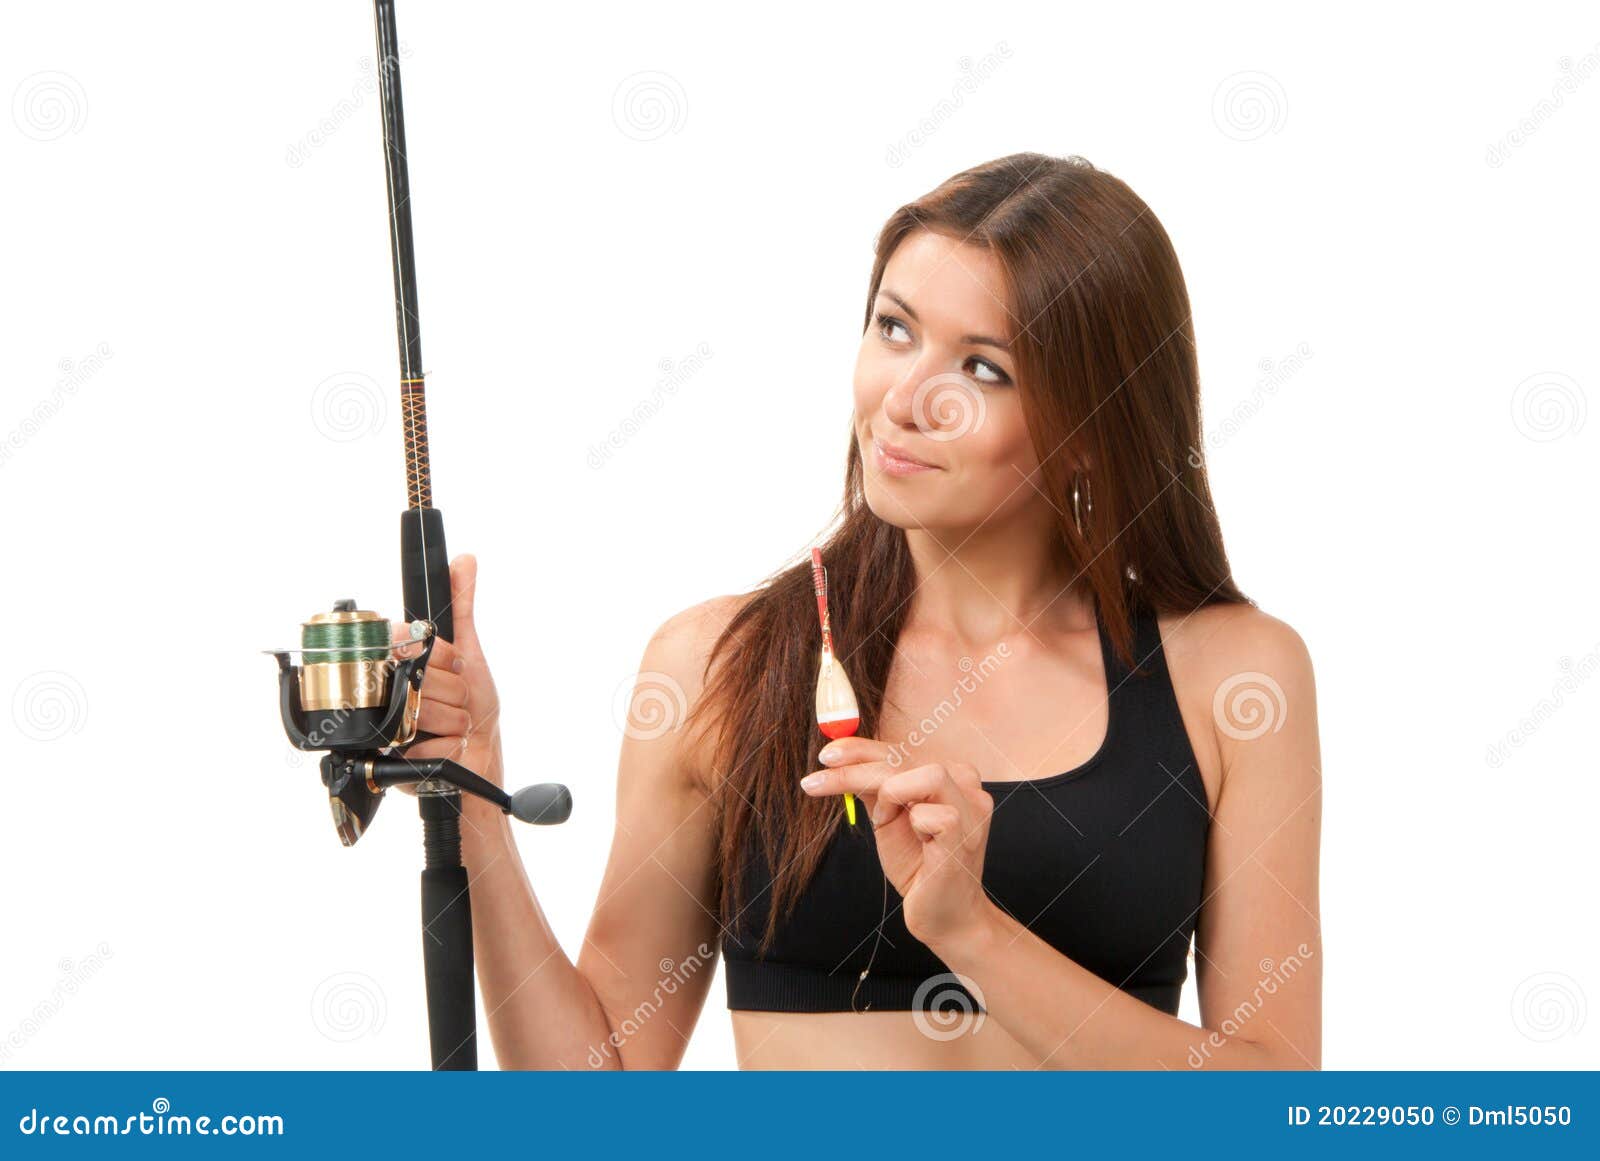 https://thumbs.dreamstime.com/z/woman-fishing-pole-rod-reel-20229050.jpg